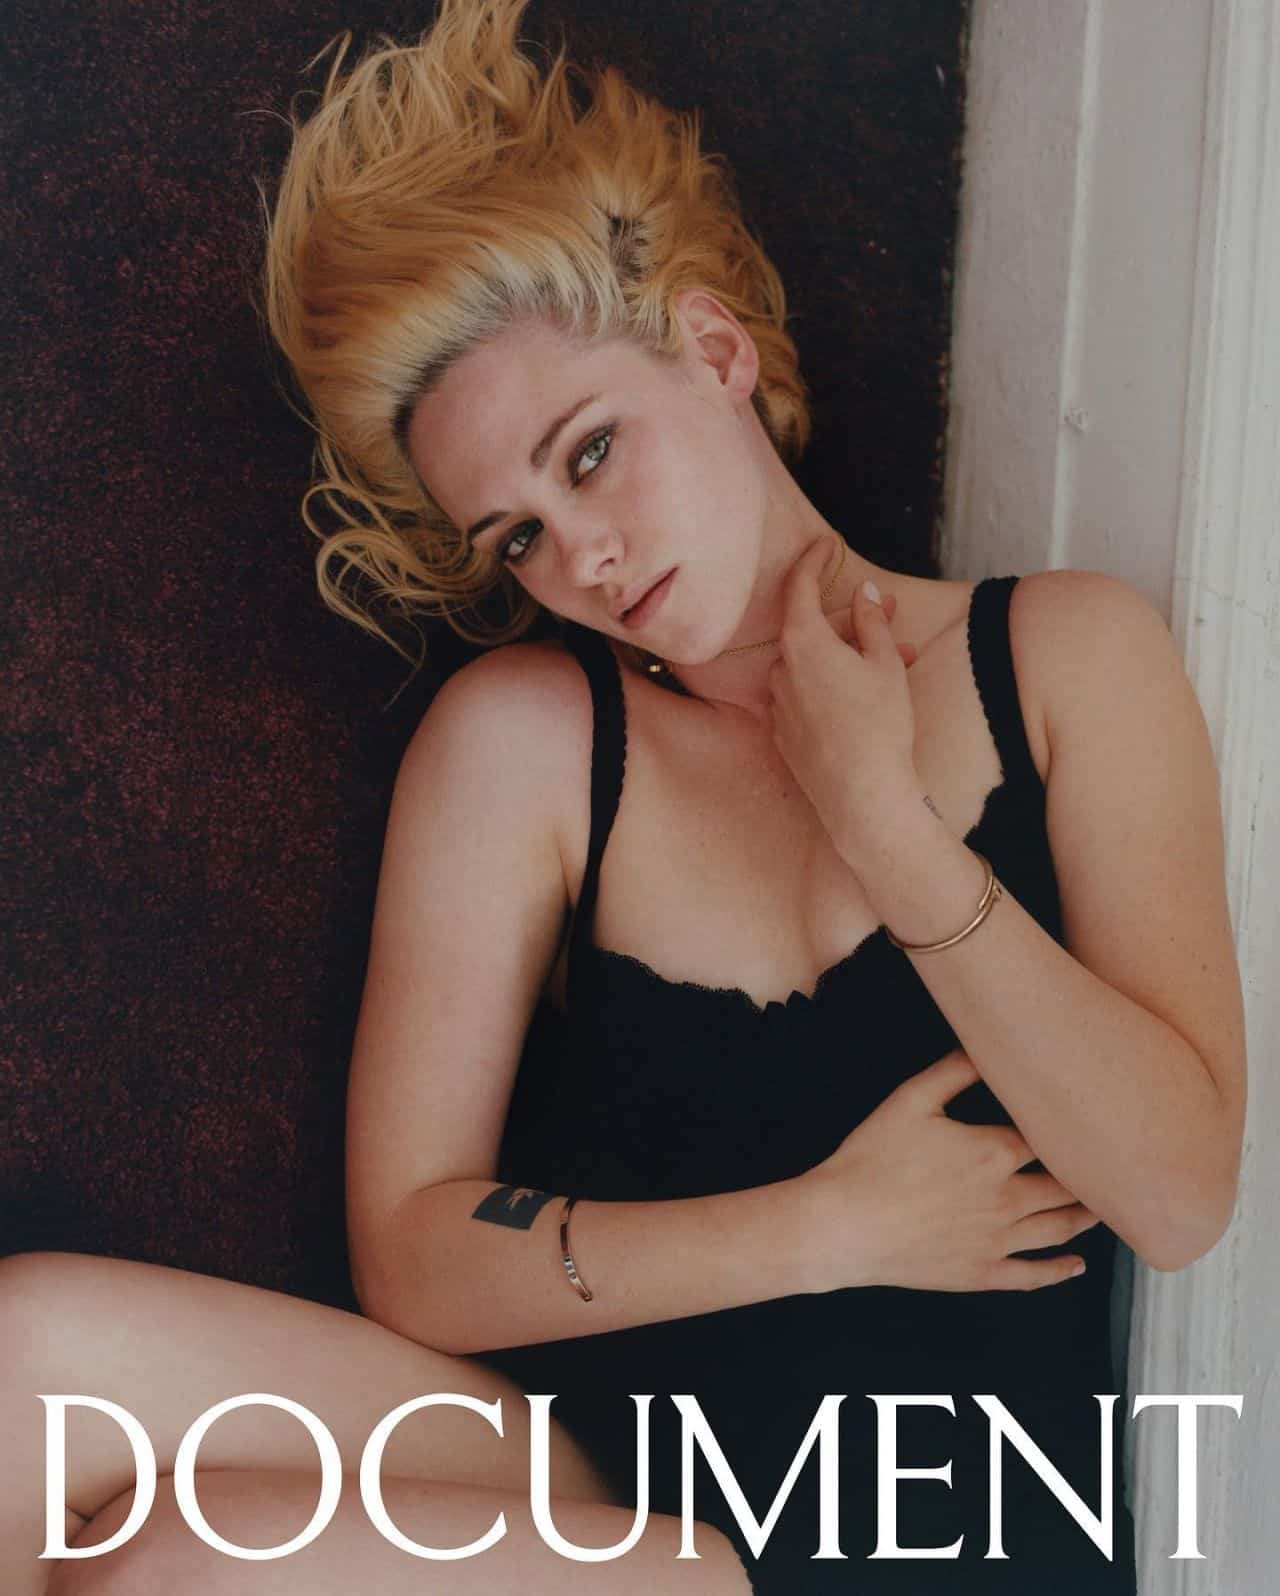 Kristen Stewart Posing for Document Journal December 2021/22 Issue